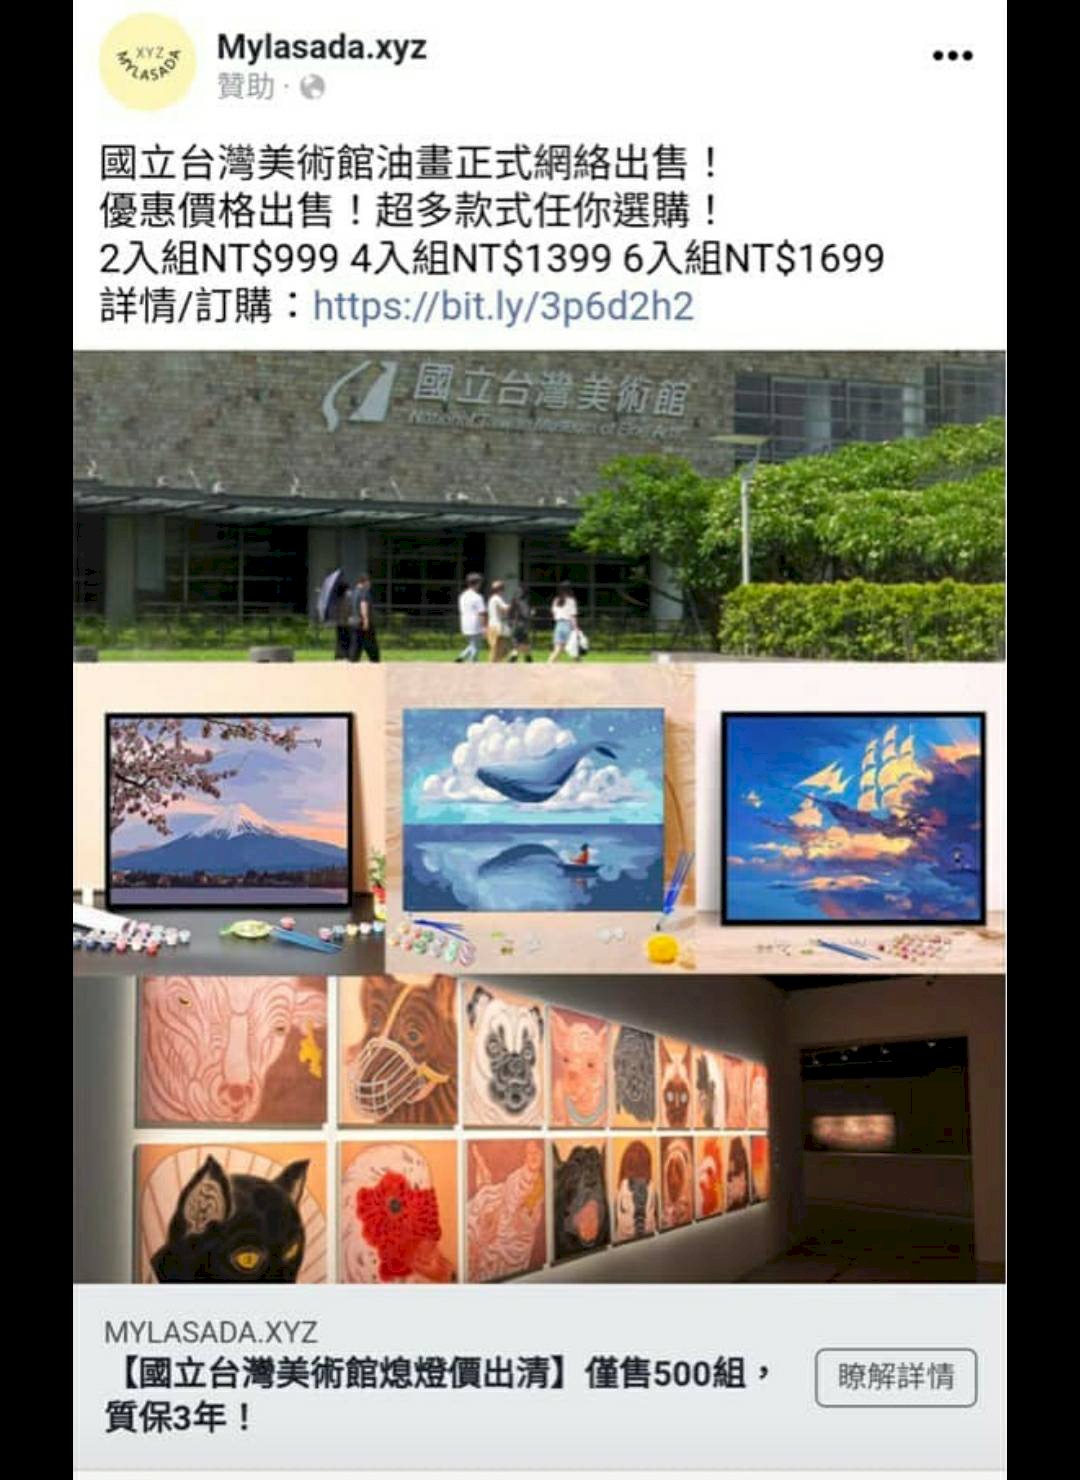 網站假借國美館之名販售藝術品  館方嚴厲譴責